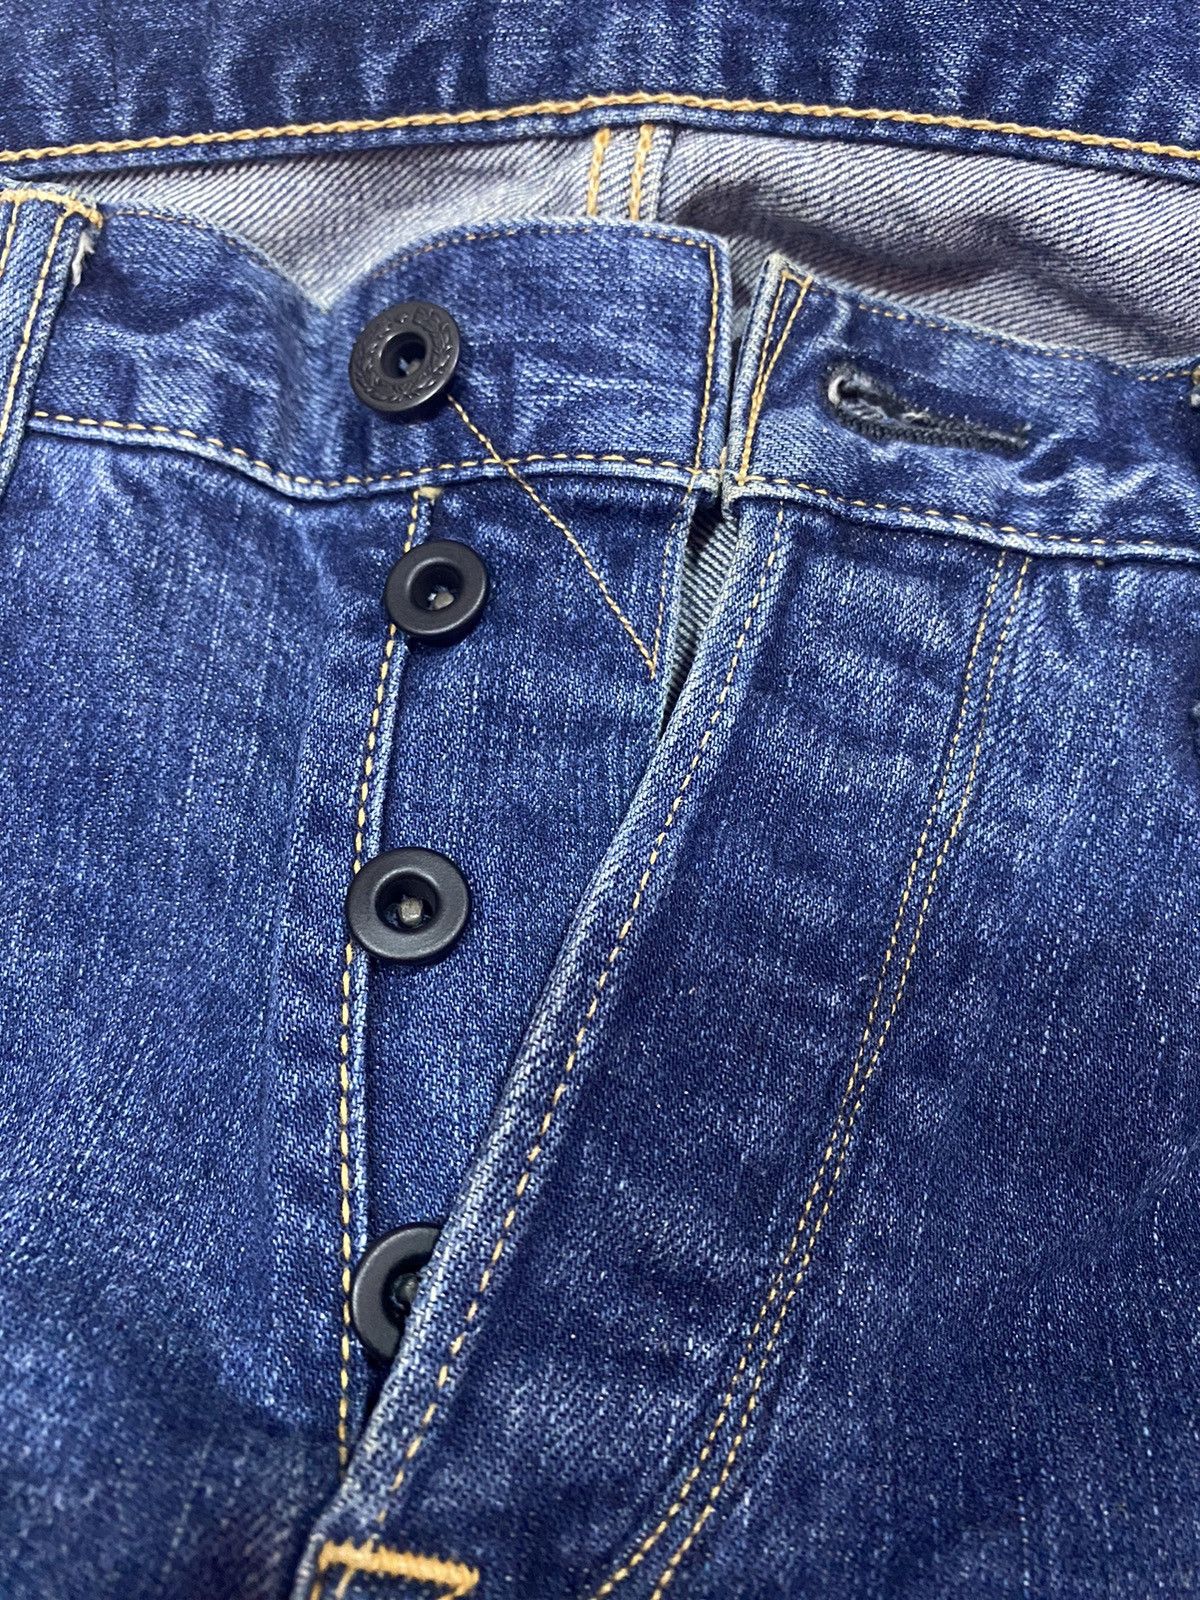 KURO Diamante Japanese Selvedge Denim Jeans - 6